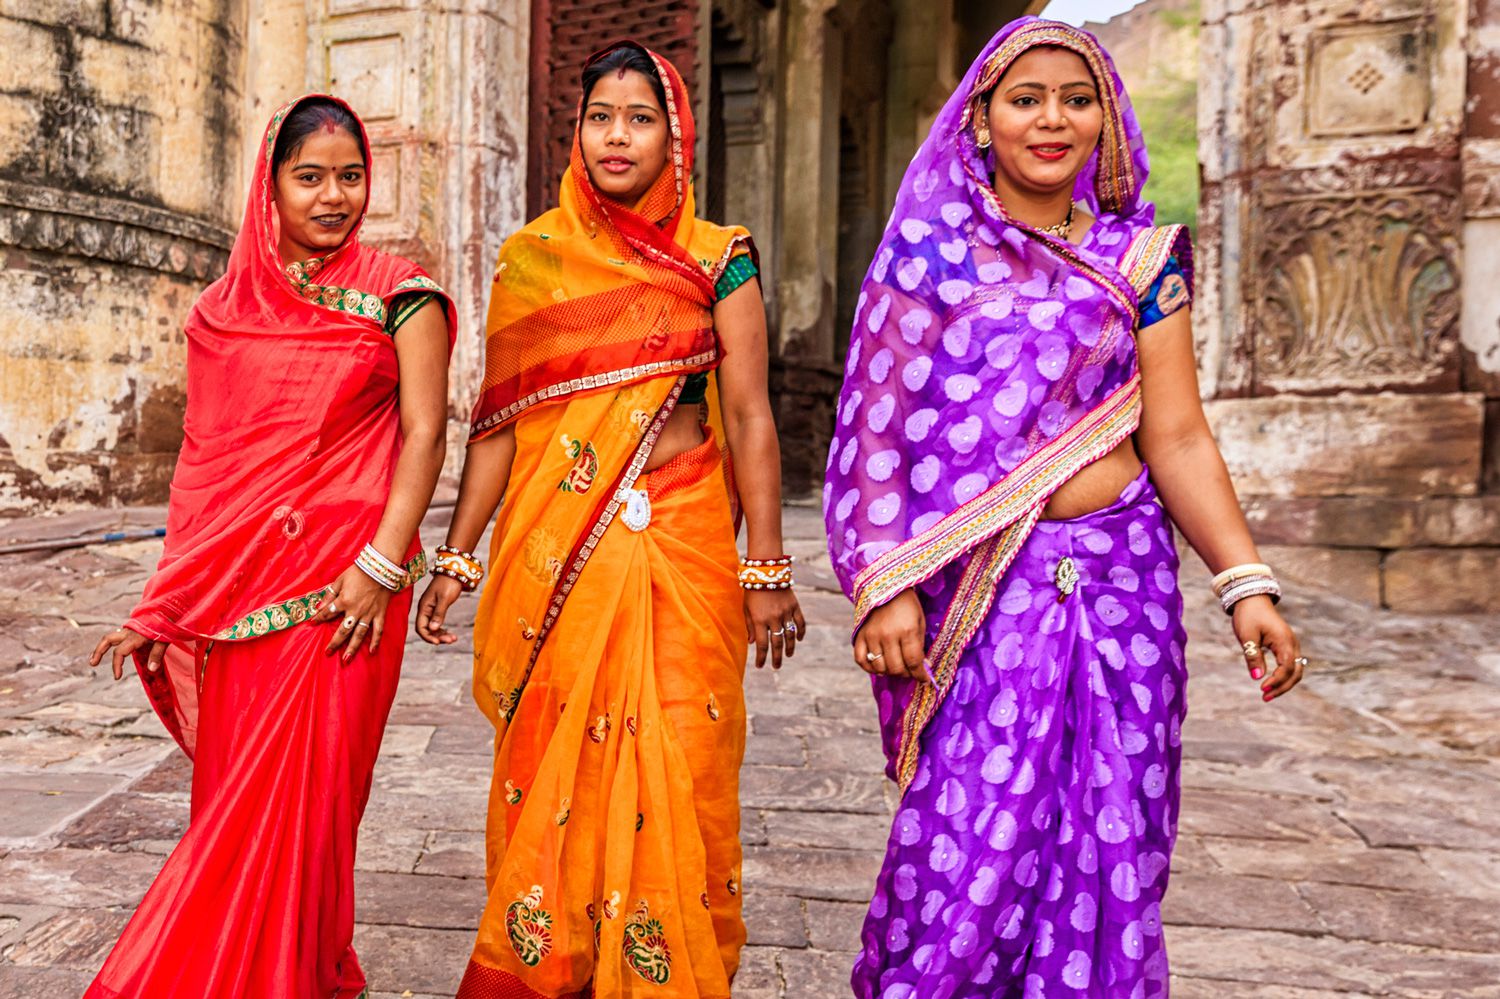 ¿Qué es el Sari? La vestimenta típica de las mujeres de la